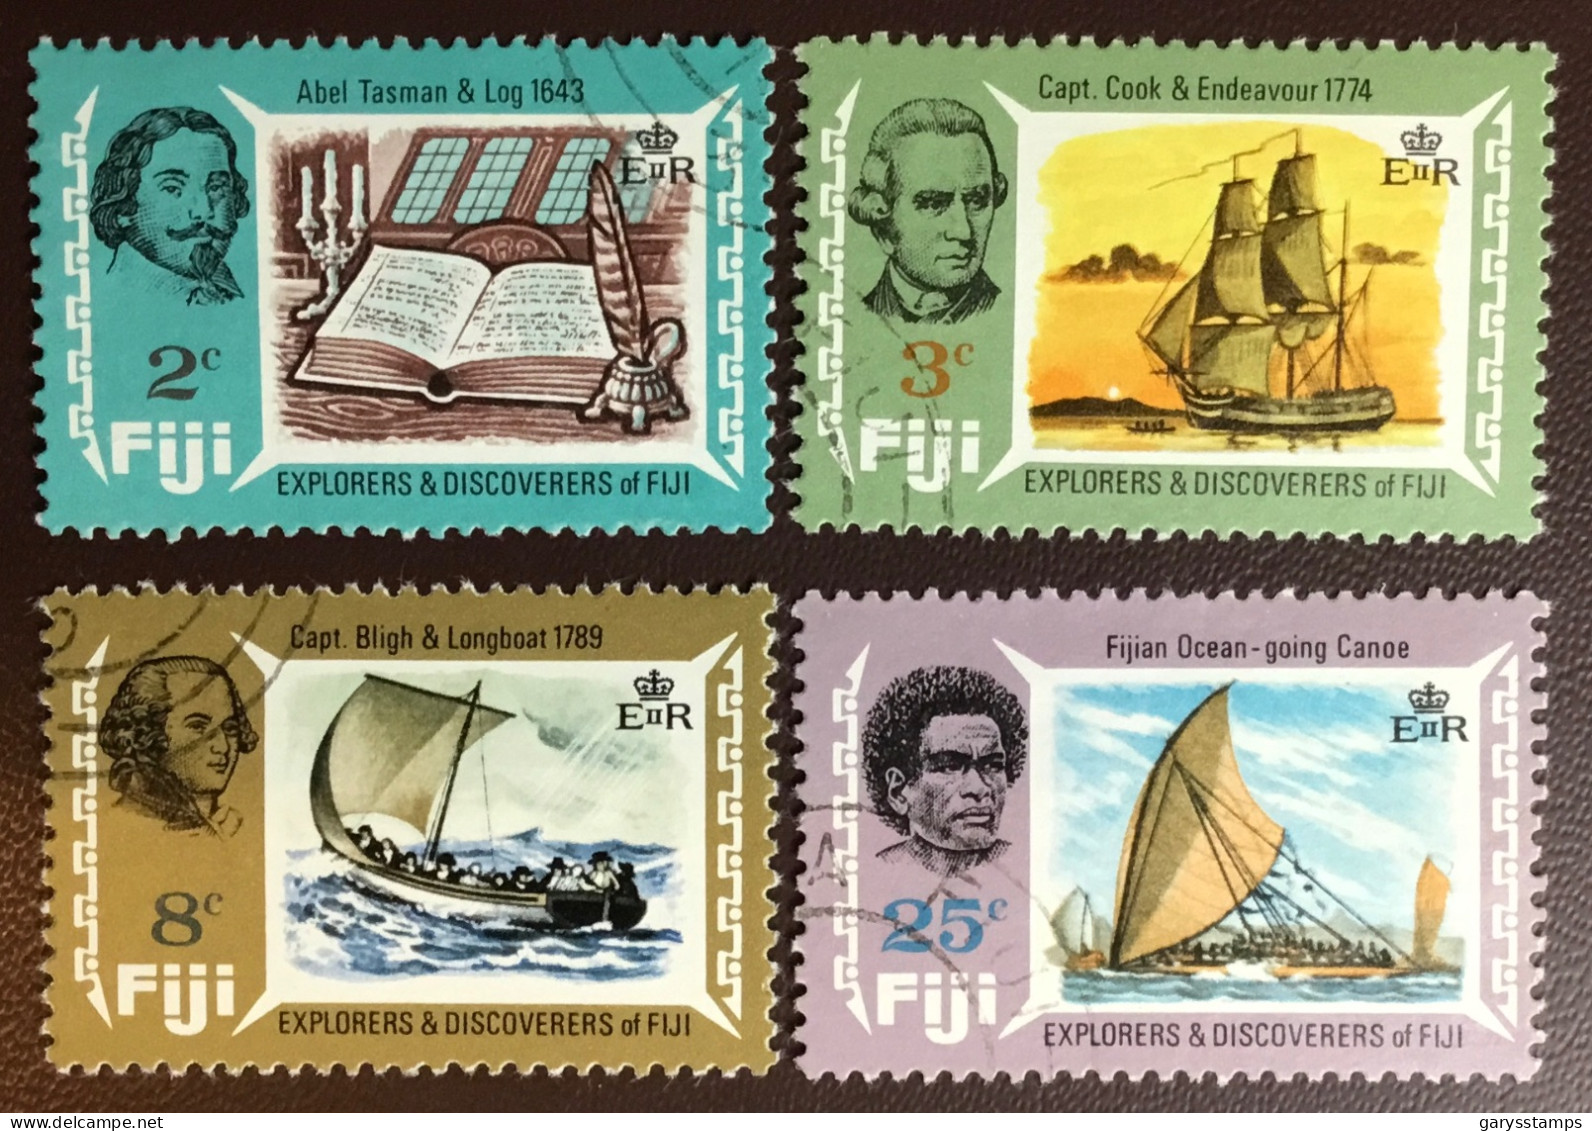 Fiji 1970 Explorers FU - Fidschi-Inseln (...-1970)